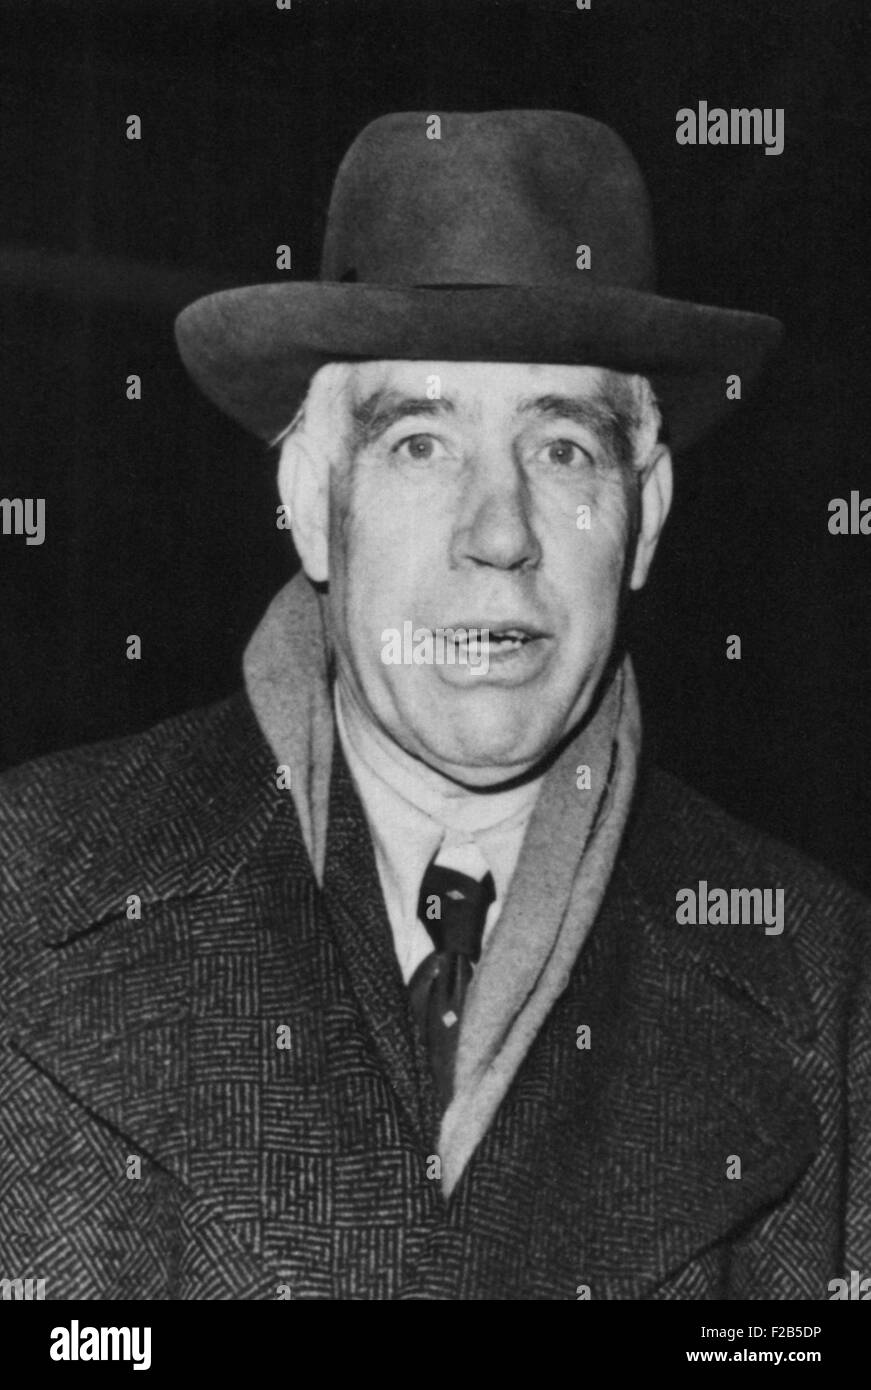 Niels Bohr, danese fisico nucleare sfuggito nazisti nel 1943. Egli ha poi aderito alla British armi nucleari progetto. Foto Data: Febbraio 17, 1948 - (BSLOC 2014 17 27) Foto Stock